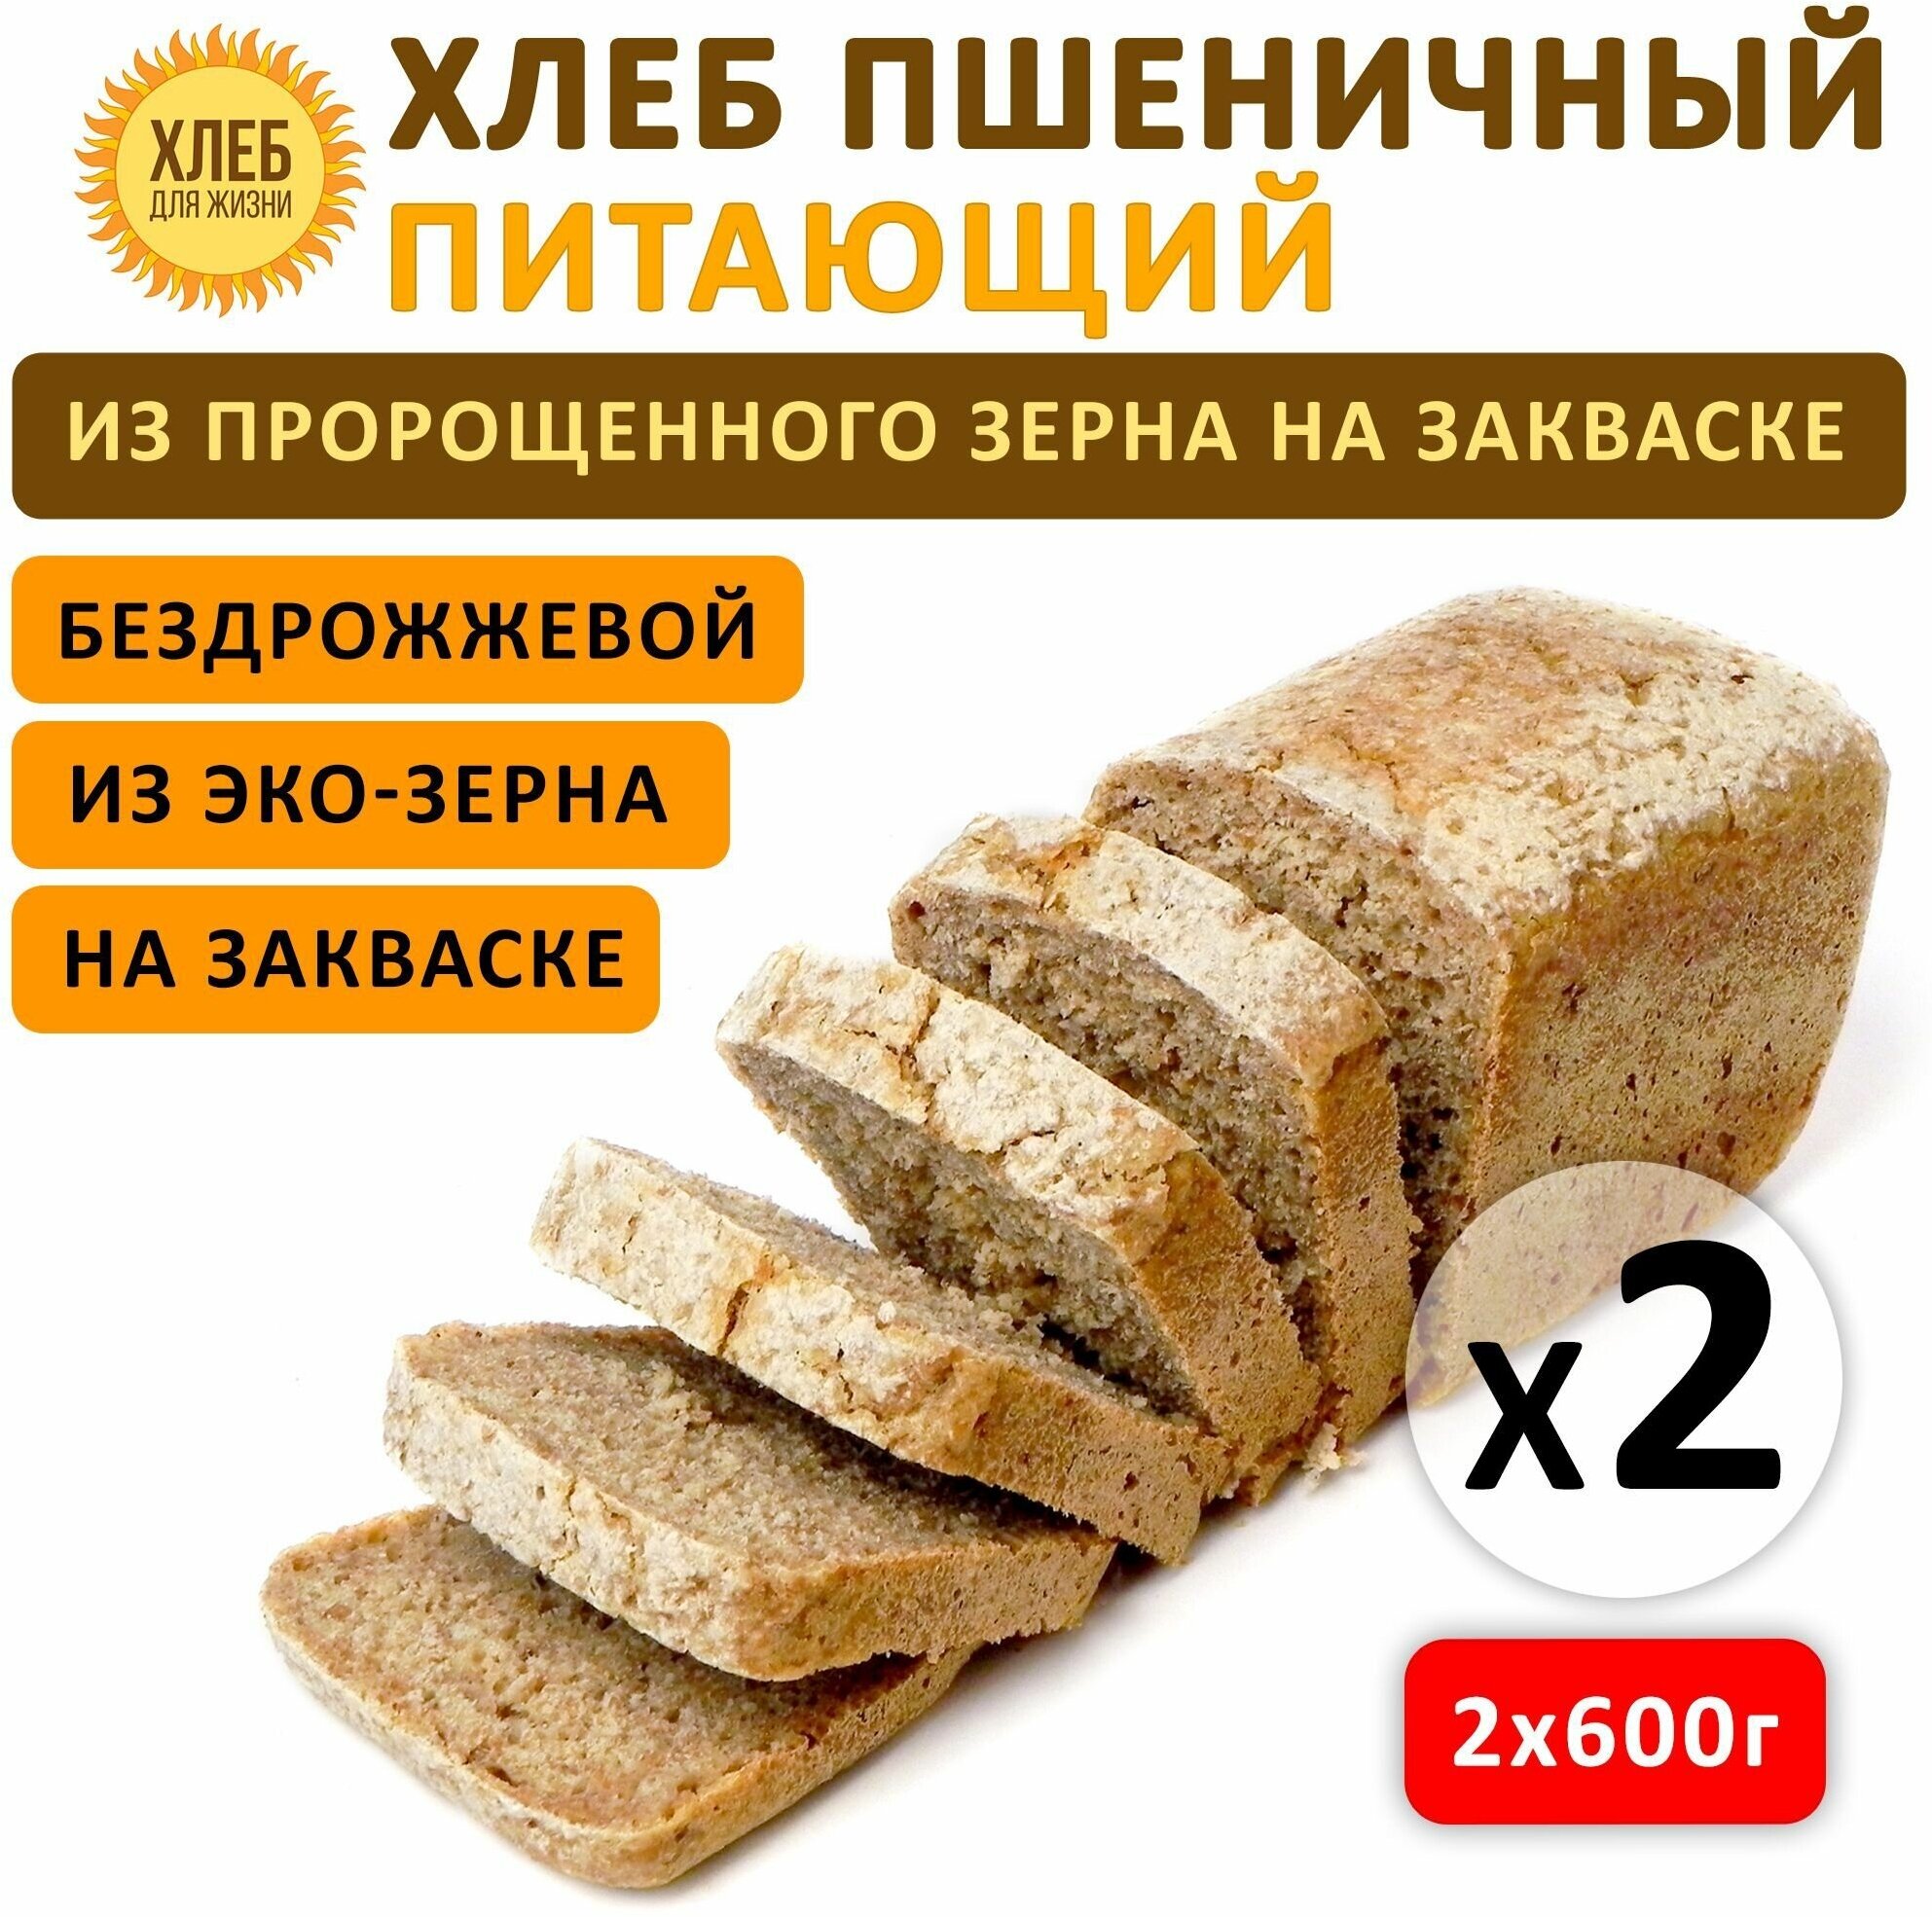 (2х600гр) Хлеб Пшеничный питающий, цельнозерновой, бездрожжевой, на ржаной закваске - Хлеб для Жизни